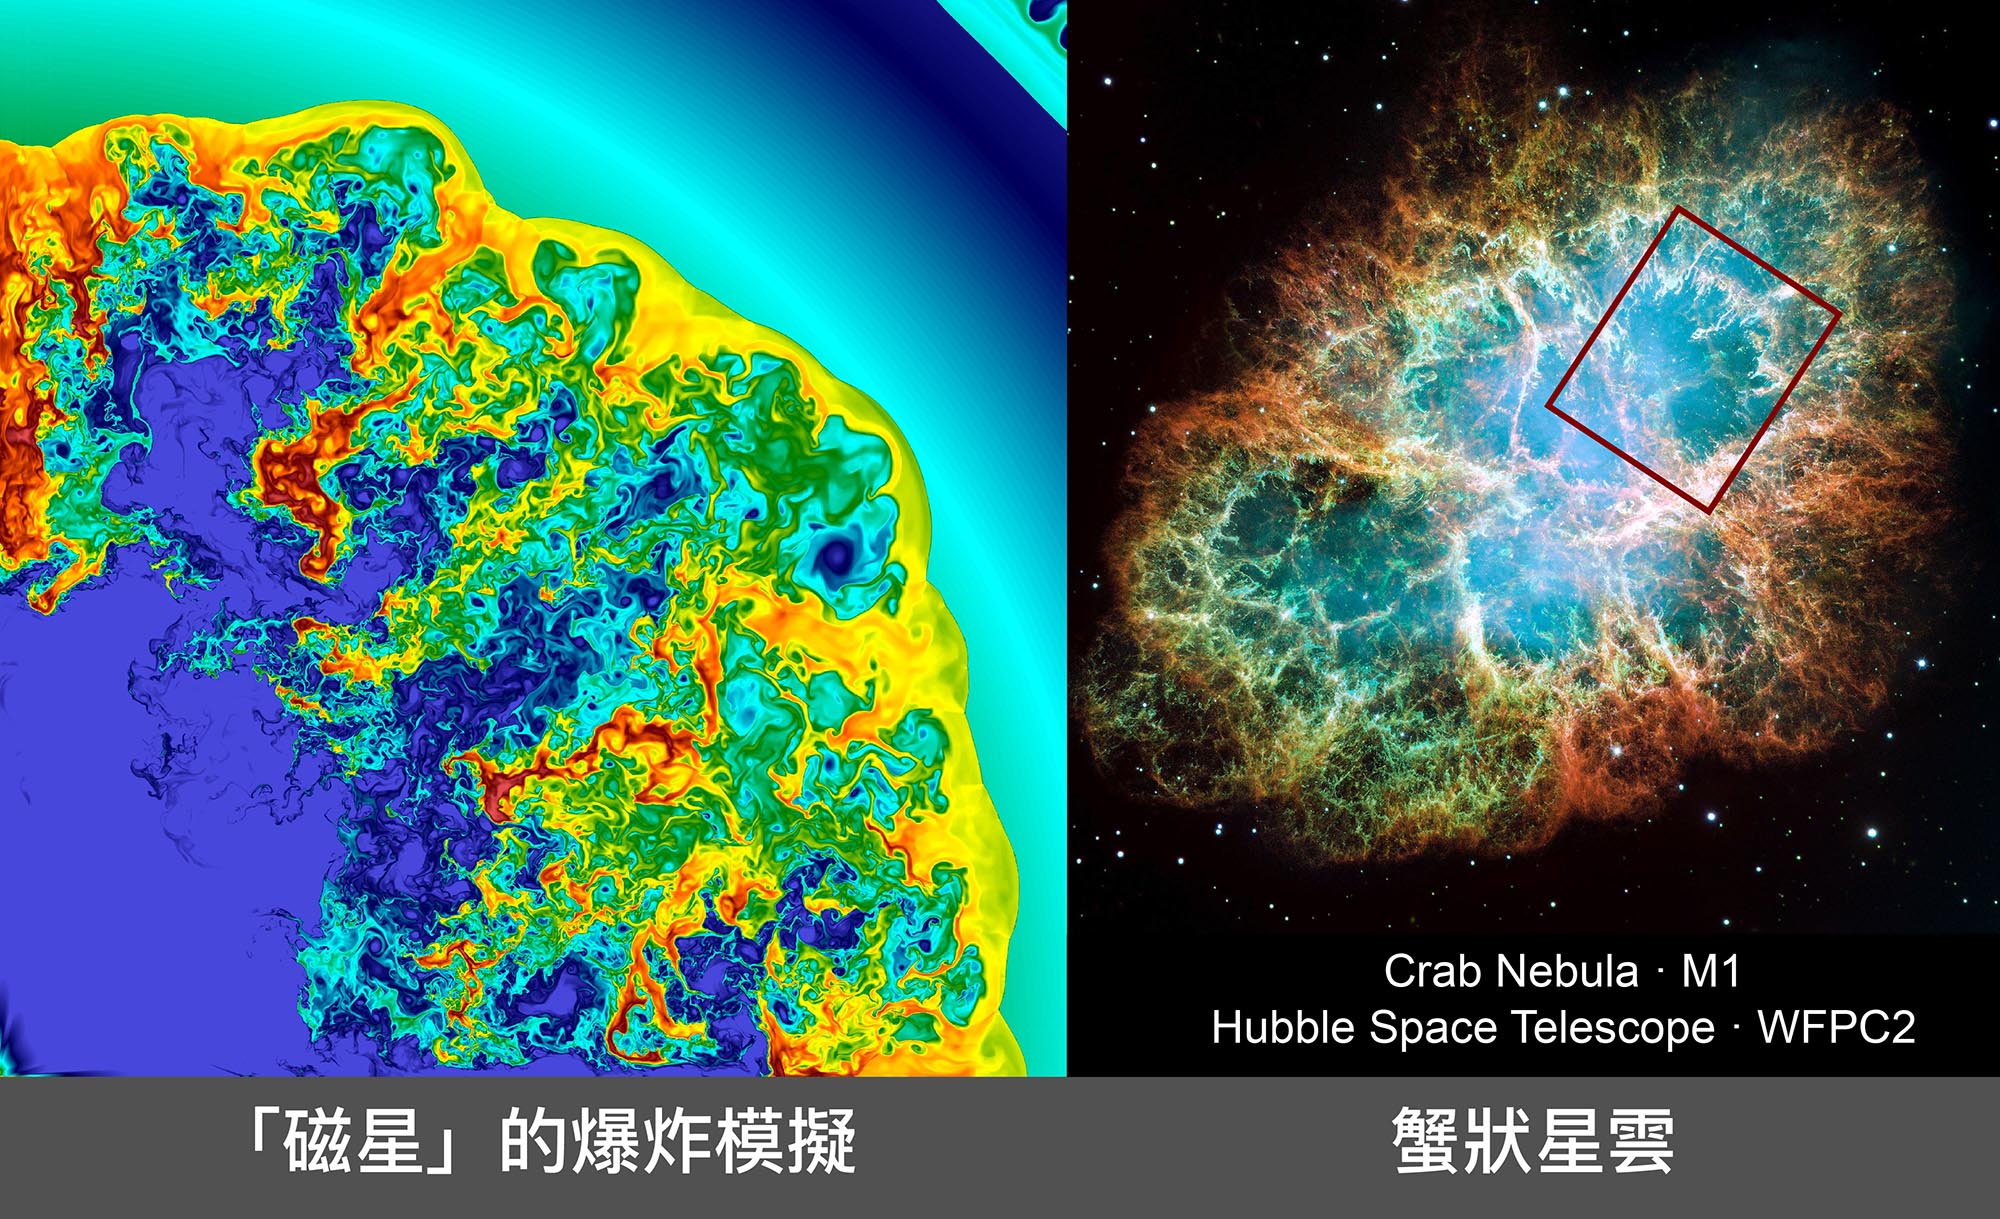 磁星 (magnetar) 的超新星爆炸機制，左圖模擬出來的結構，與右圖的蟹狀星雲（紅框處）非常像。資料來源│左圖：陳科榮，右圖：NASA, ESA, J. Hester and A. Loll (Arizona State University)